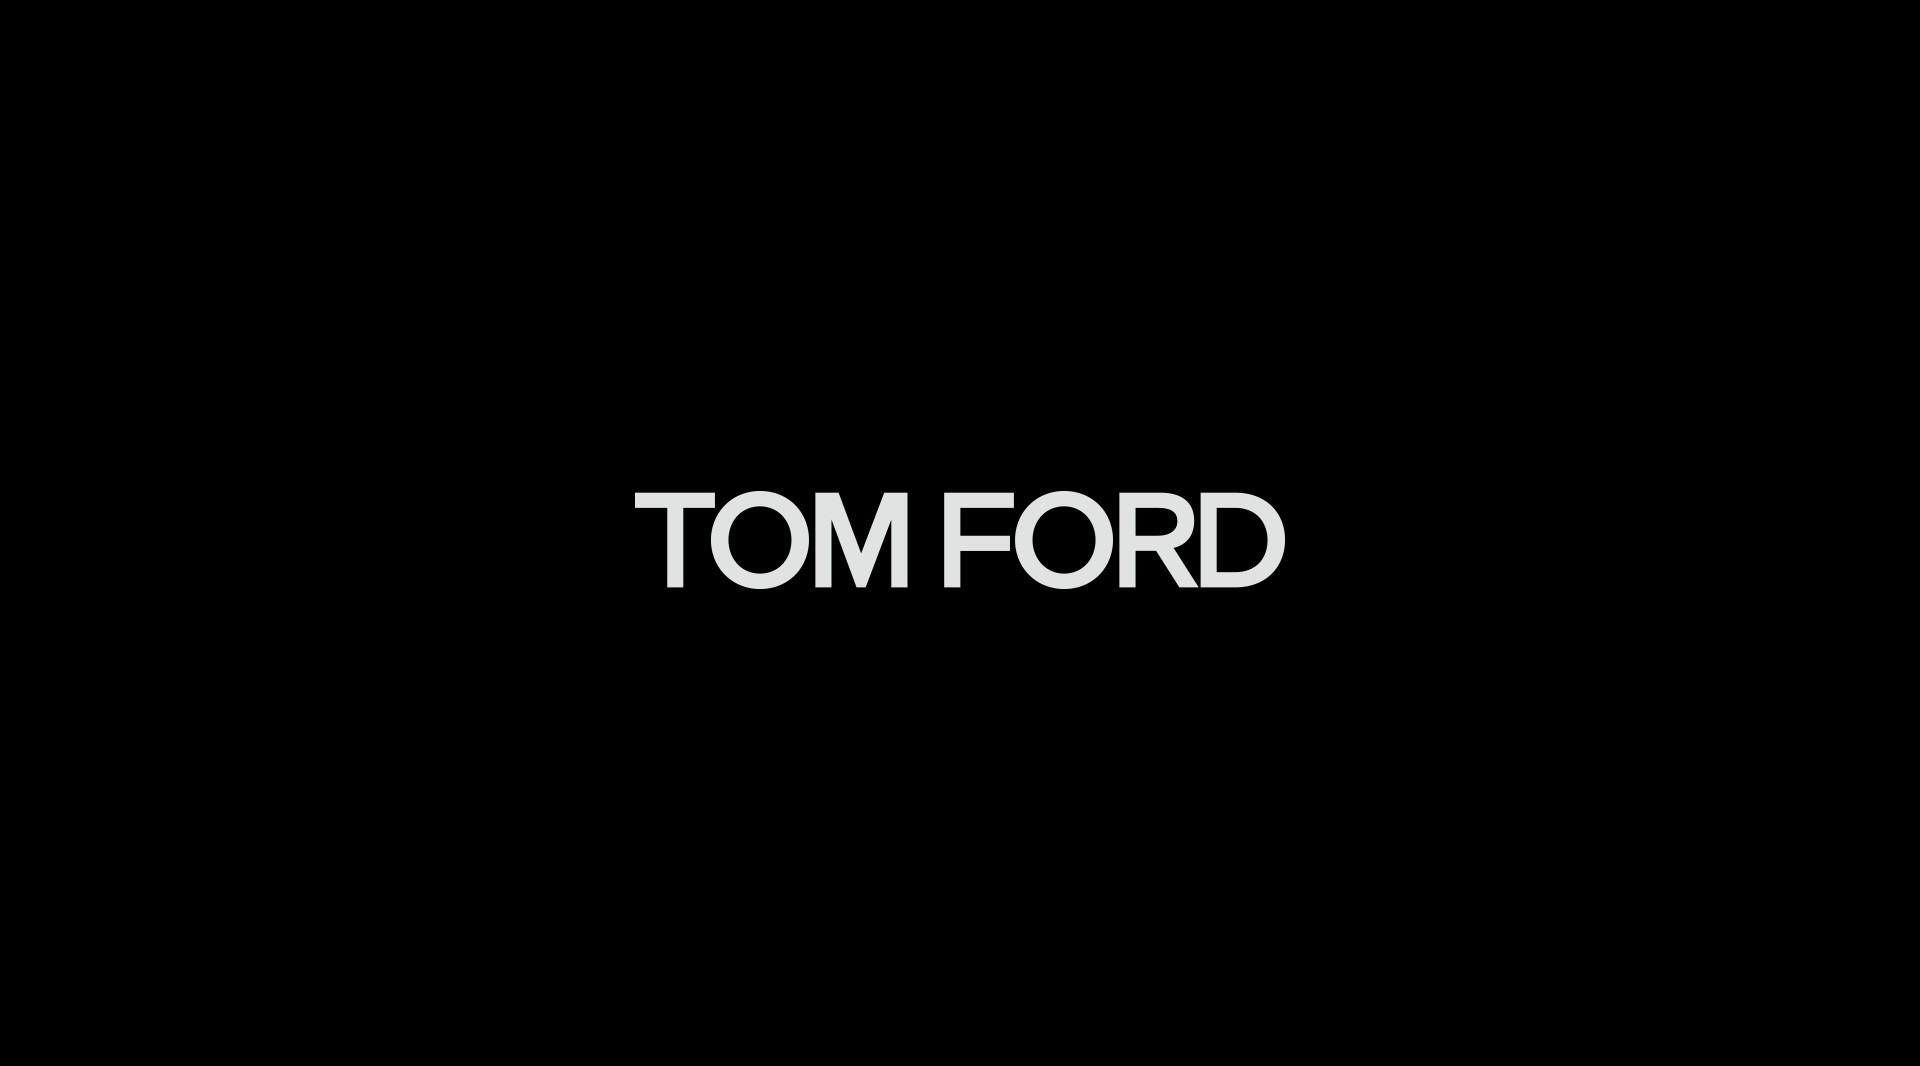 Tom Ford 双十一奢金系列 产品篇 